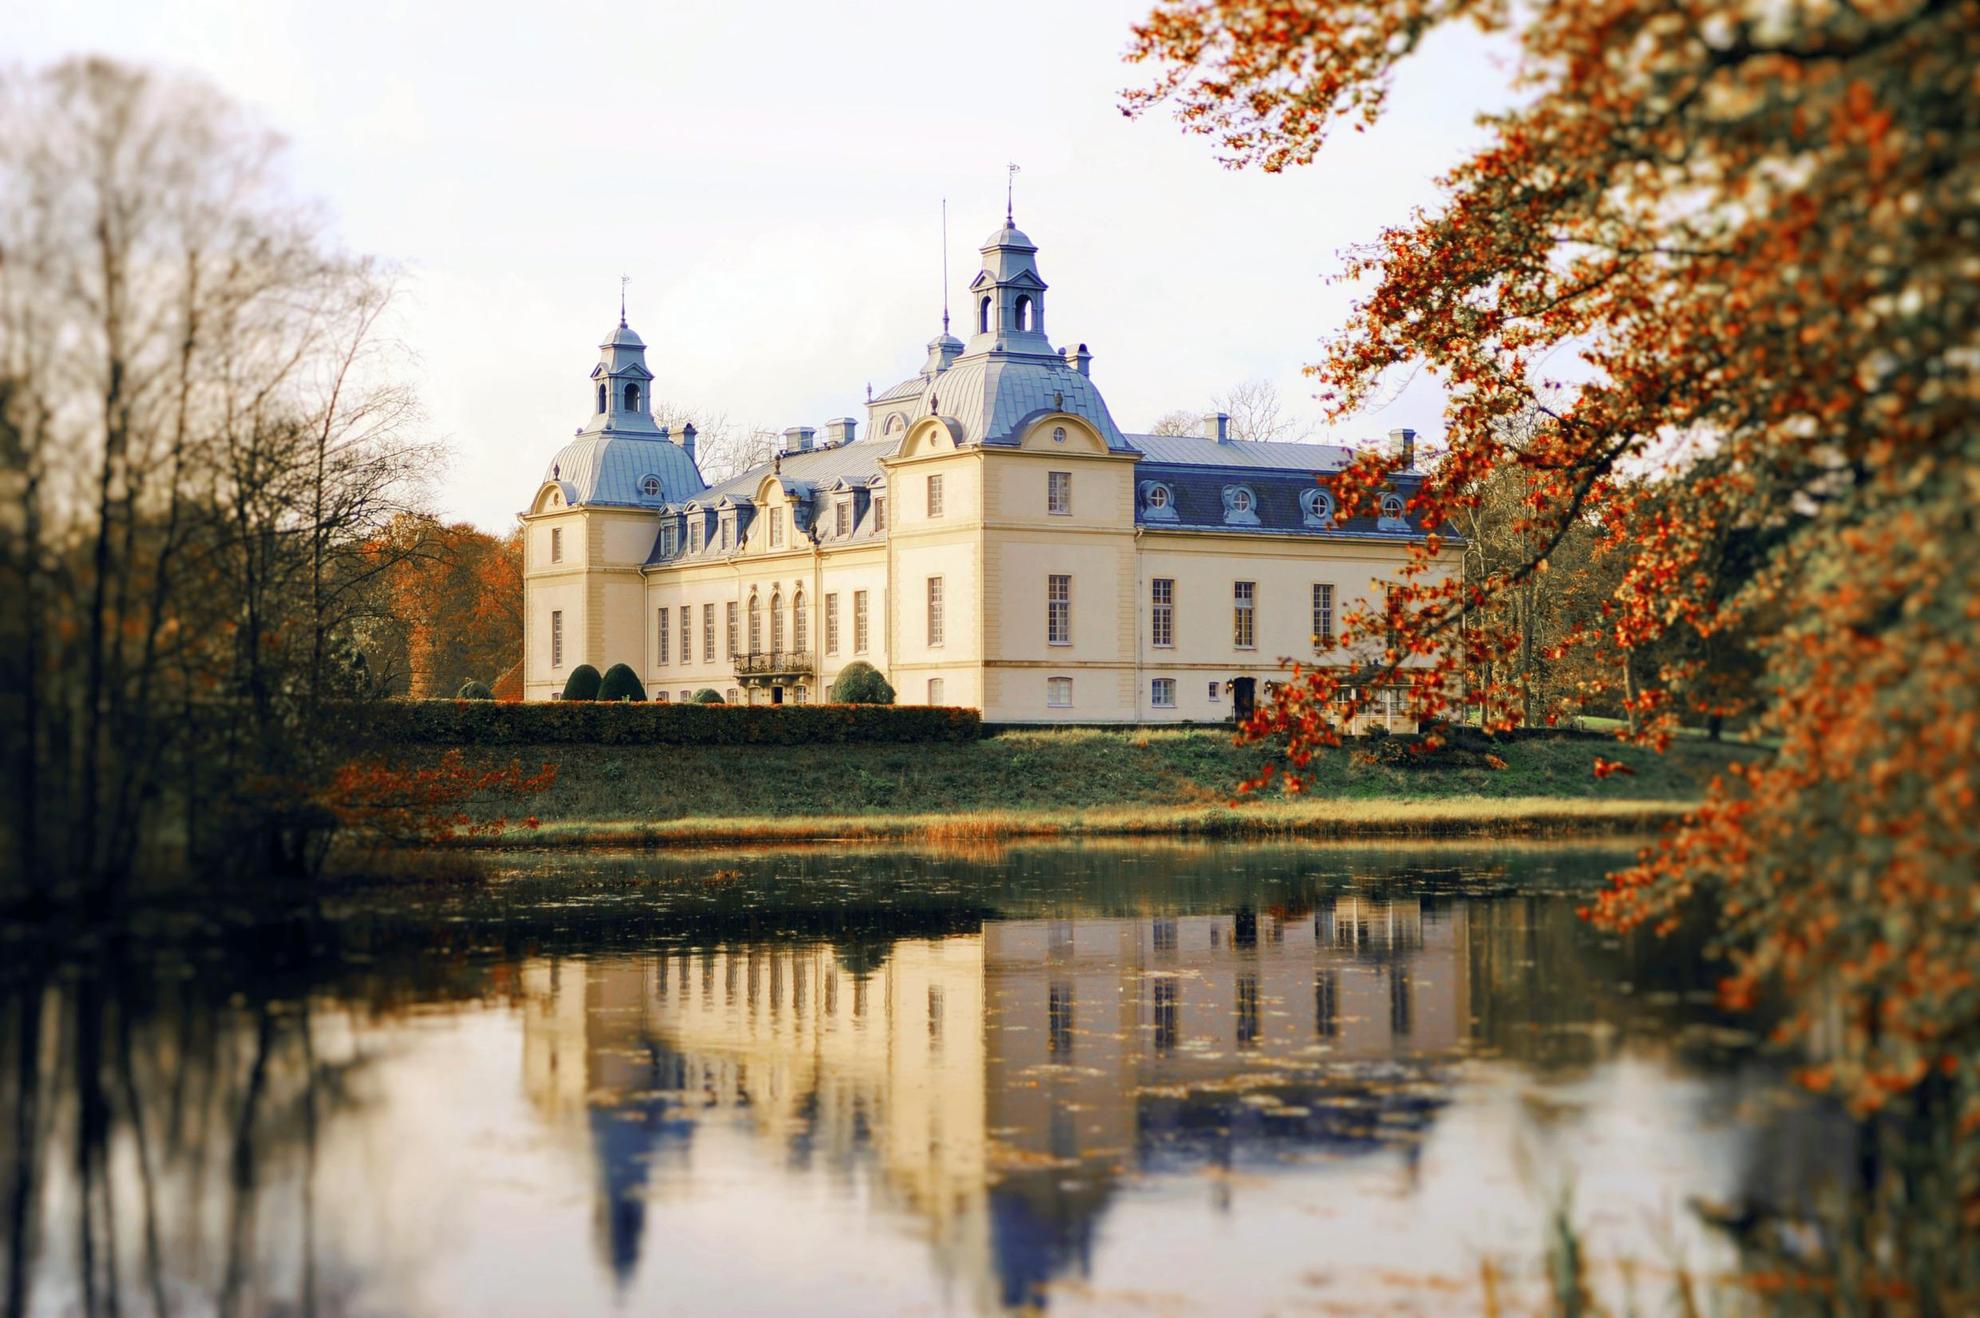 Kasteel Kronovall naast een meer in de herfst. Het kasteel wordt weerspiegeld in het water.